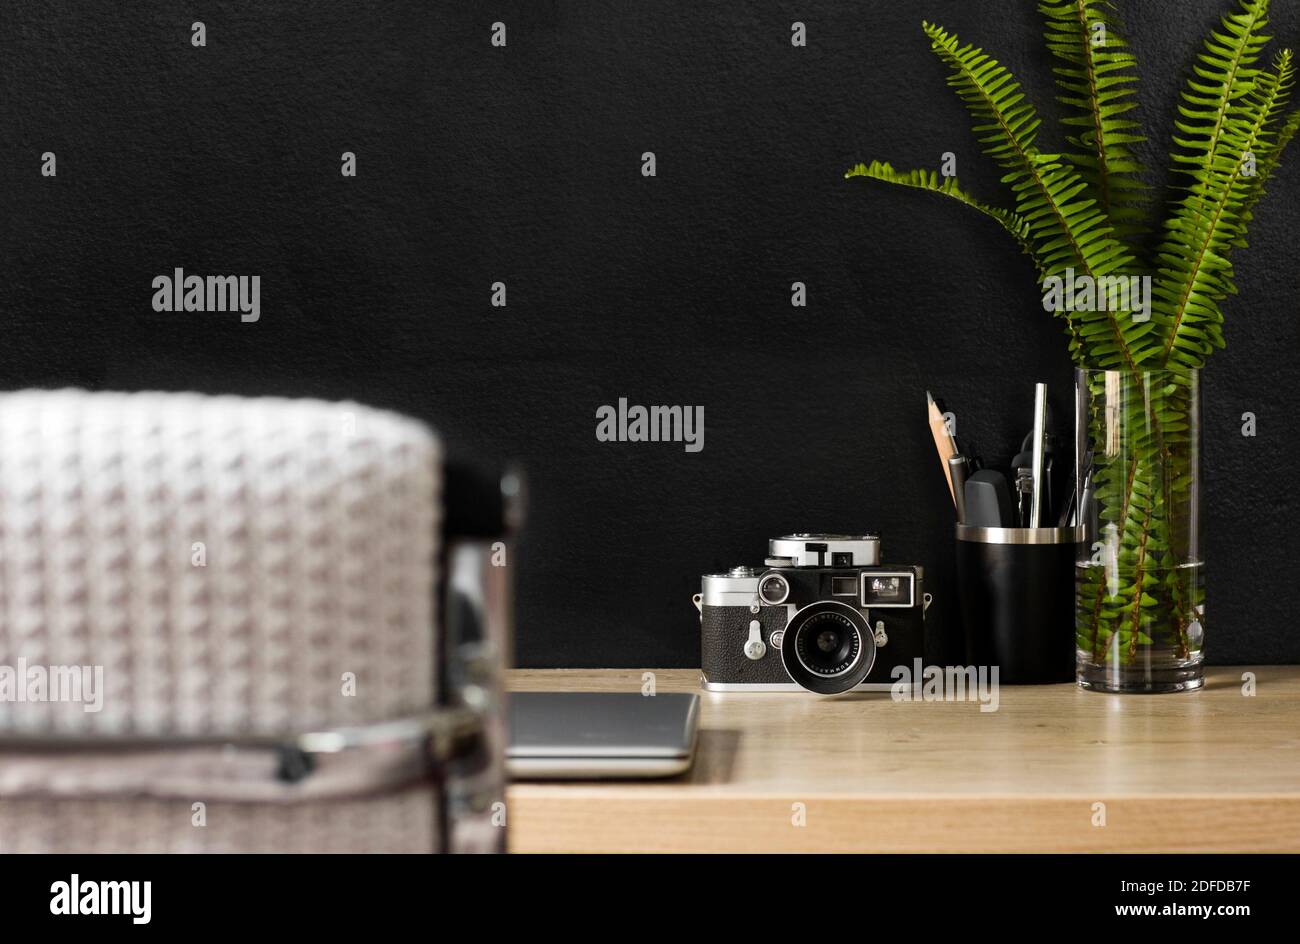 Uno spazio organizzato per l'ufficio domestico con una fotocamera vintage. Il decor color crema, nero e argento creano un'atmosfera rilassata per lavorare in modo produttivo da casa. Foto Stock